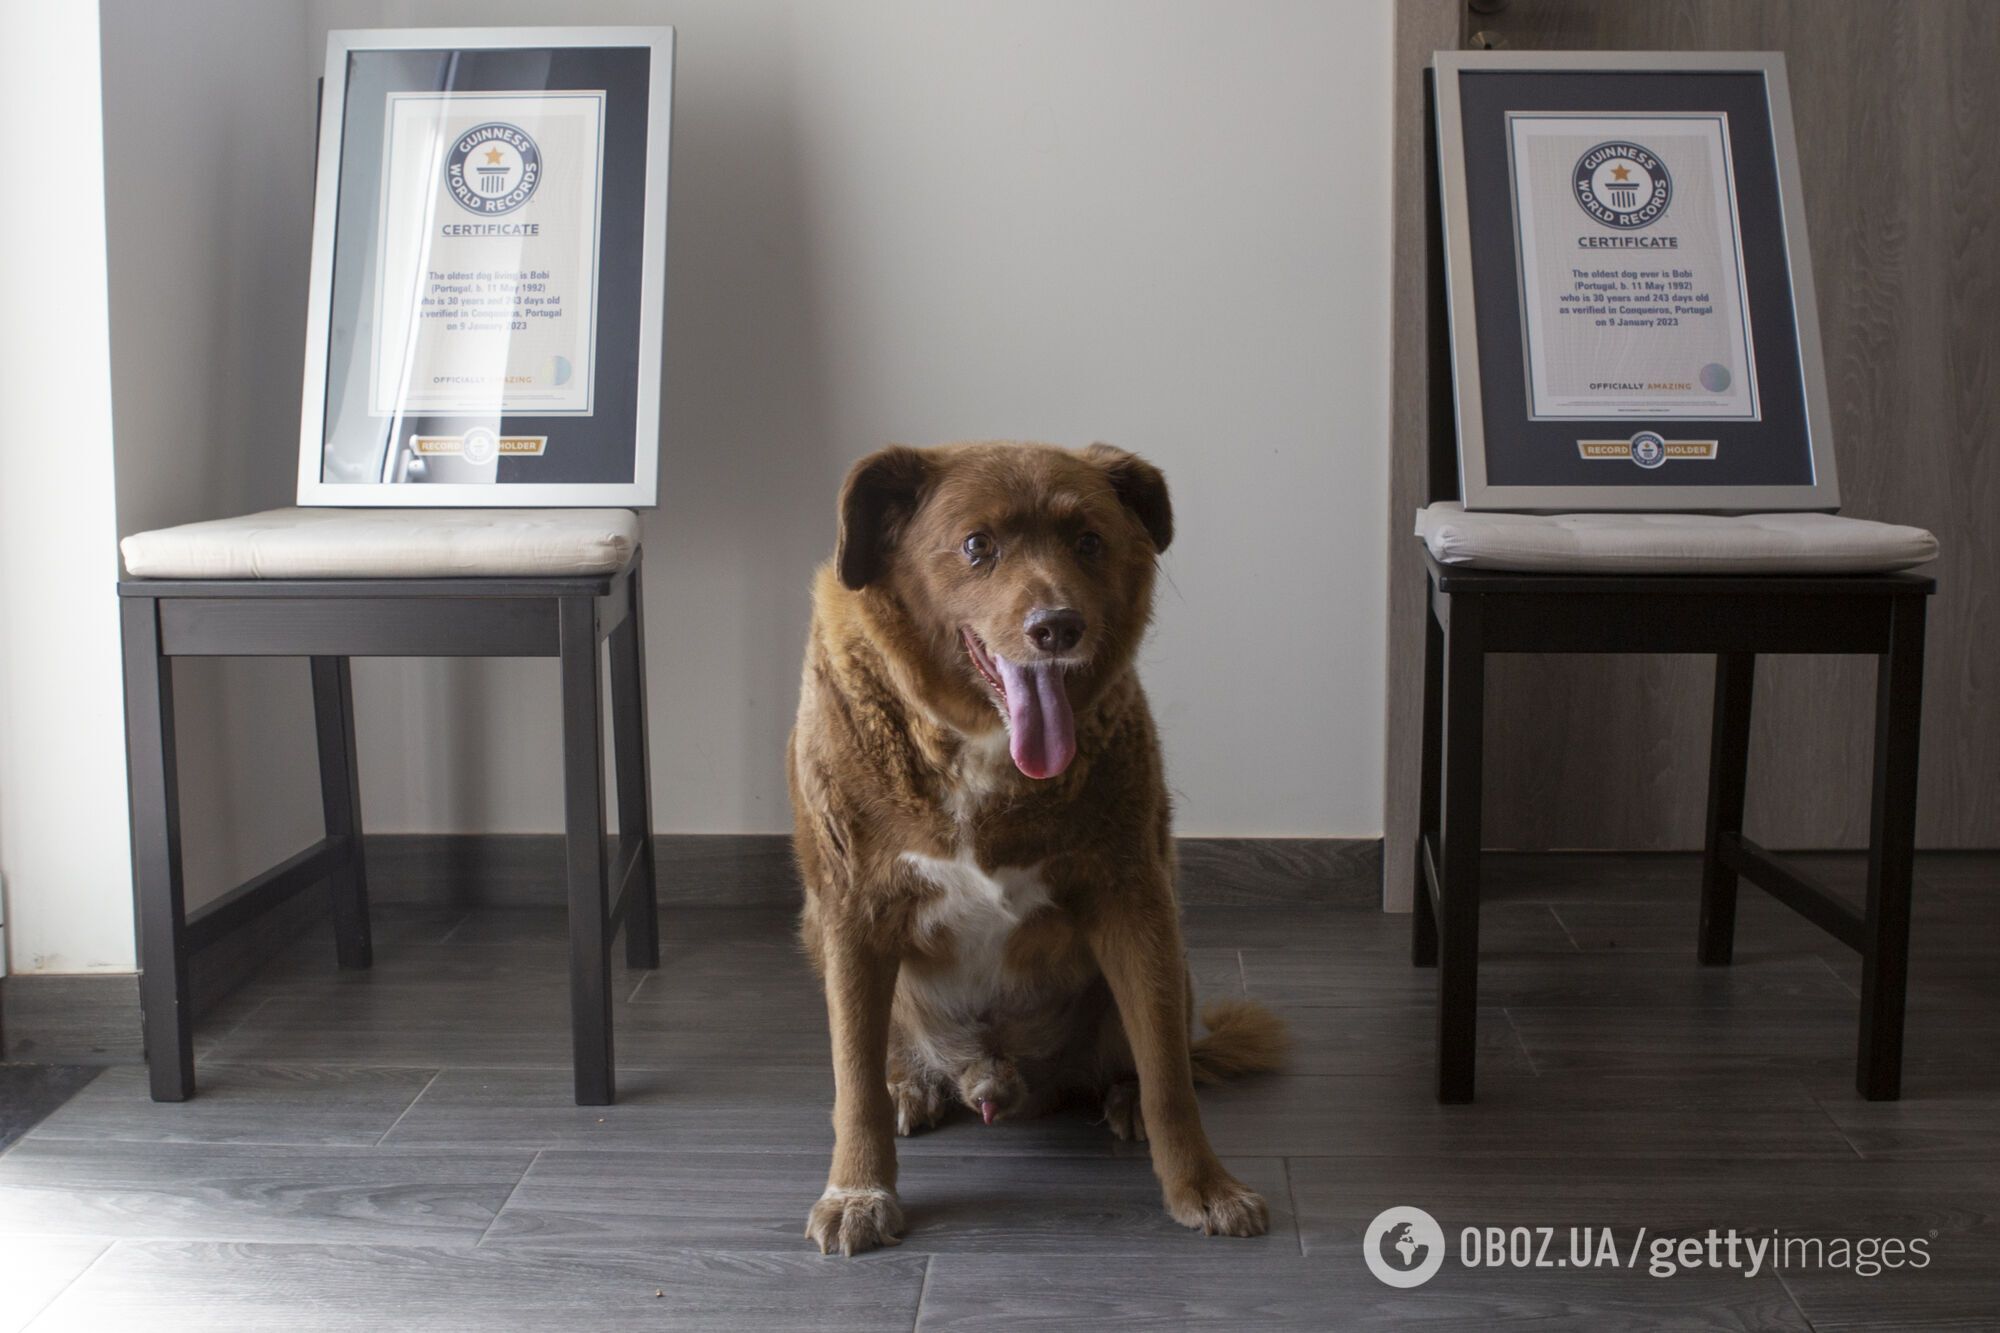 Самую старую собаку в истории лишили титула Книги рекордов Гиннеса после проверки доказательств